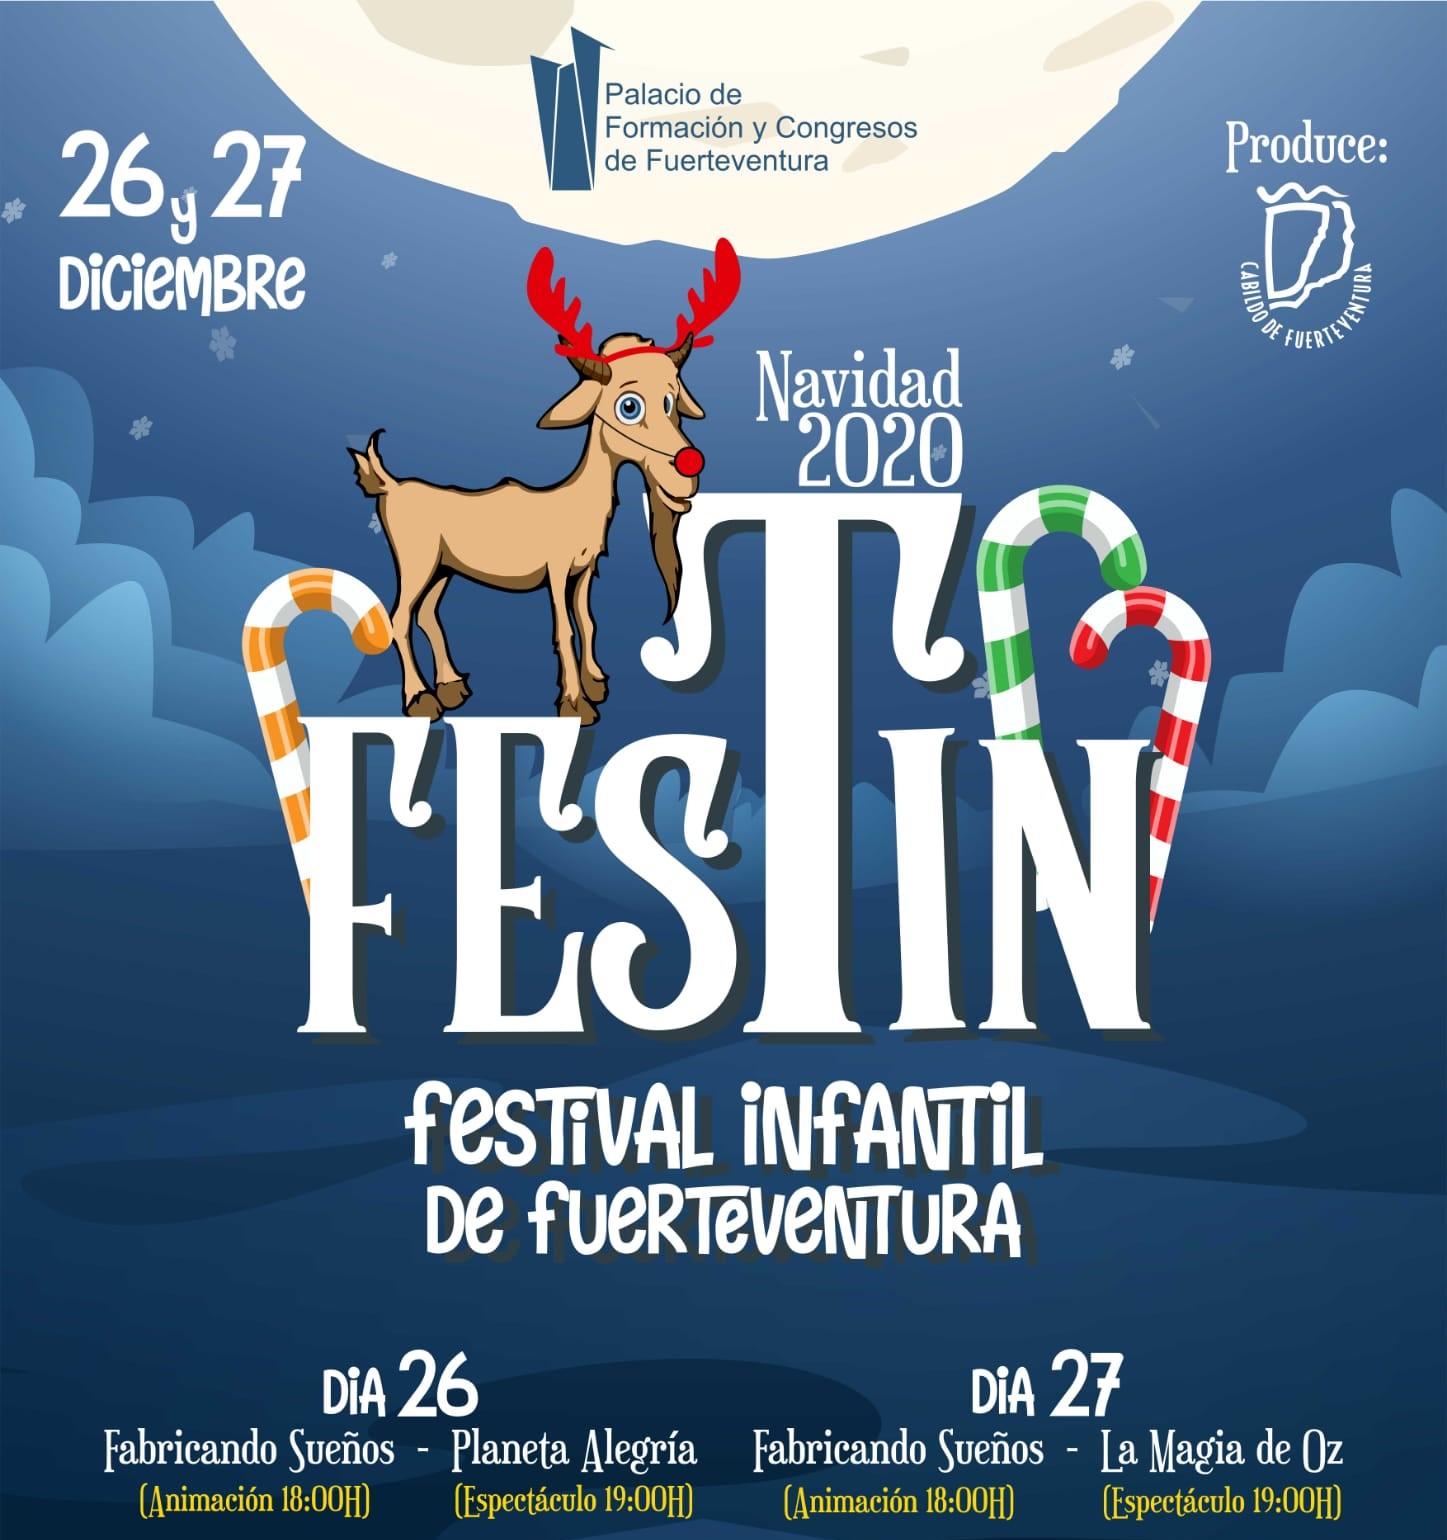 Cartel de Festin 2020 en Palacio de Formación y Congresos de Fuerteventura / CanariasNoticias.es